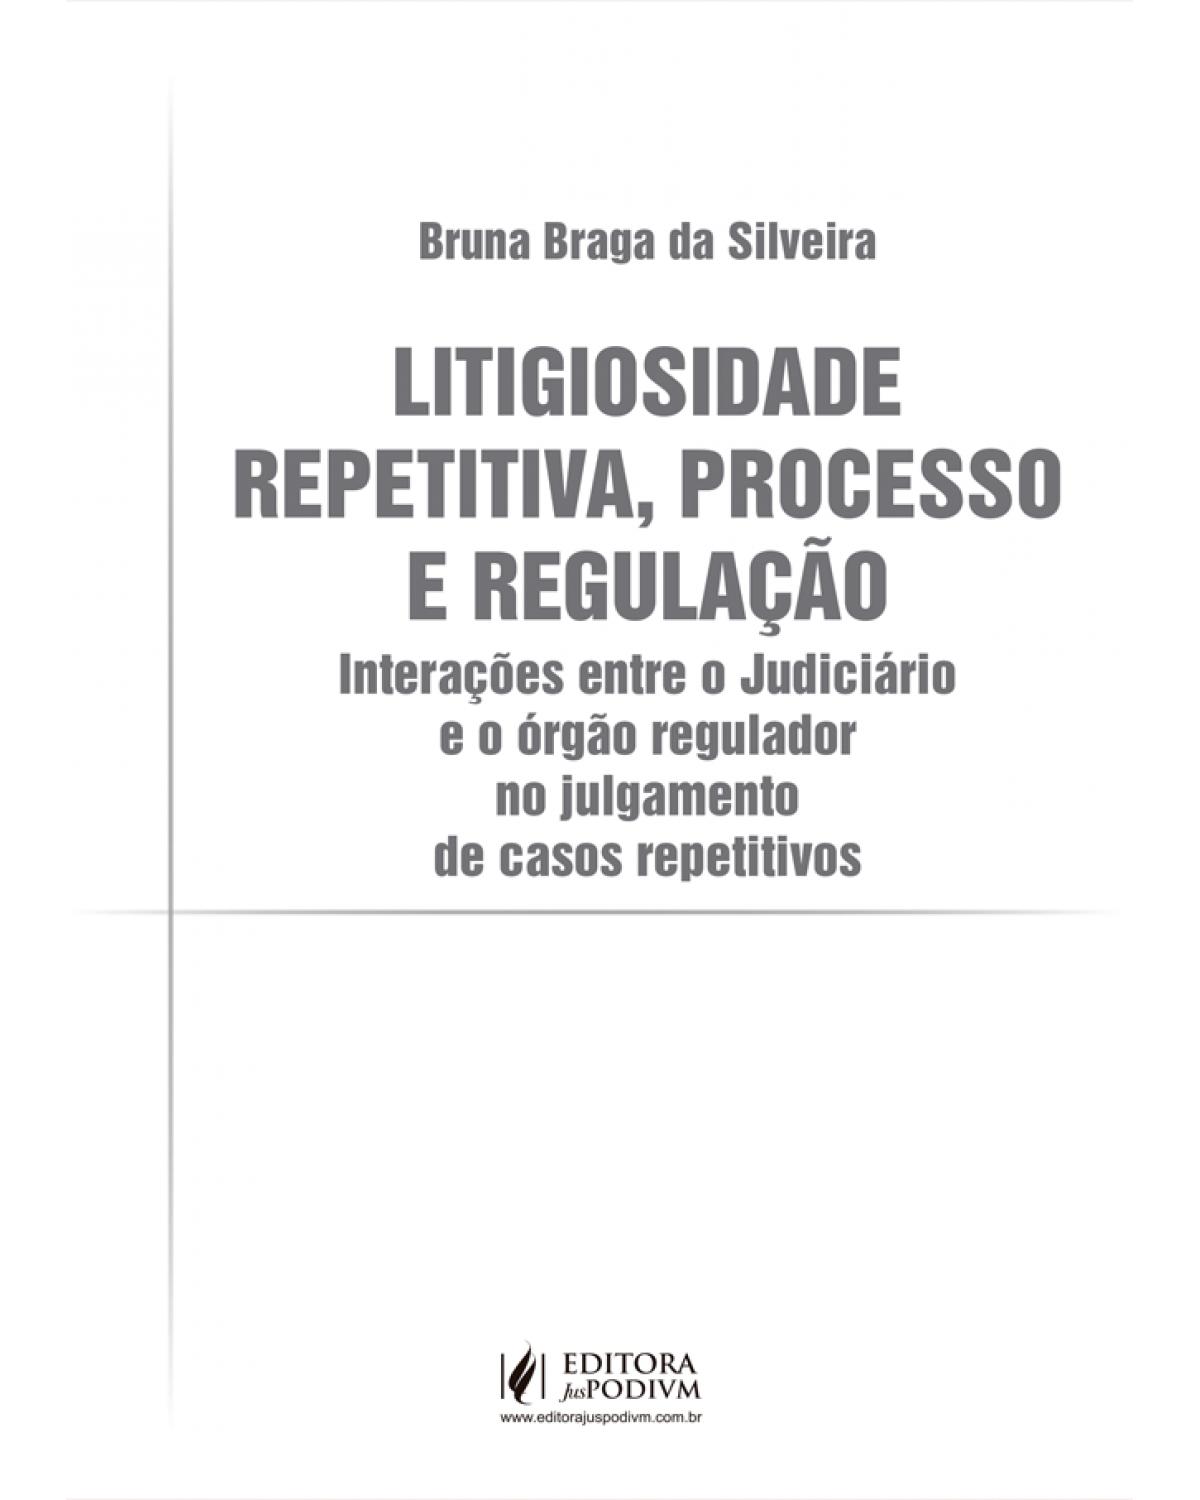 Litigiosidade repetitiva, processo e regulação - interações entre o judiciário e o órgão regulador no julgamento de casos repetitivos - 1ª Edição | 2021